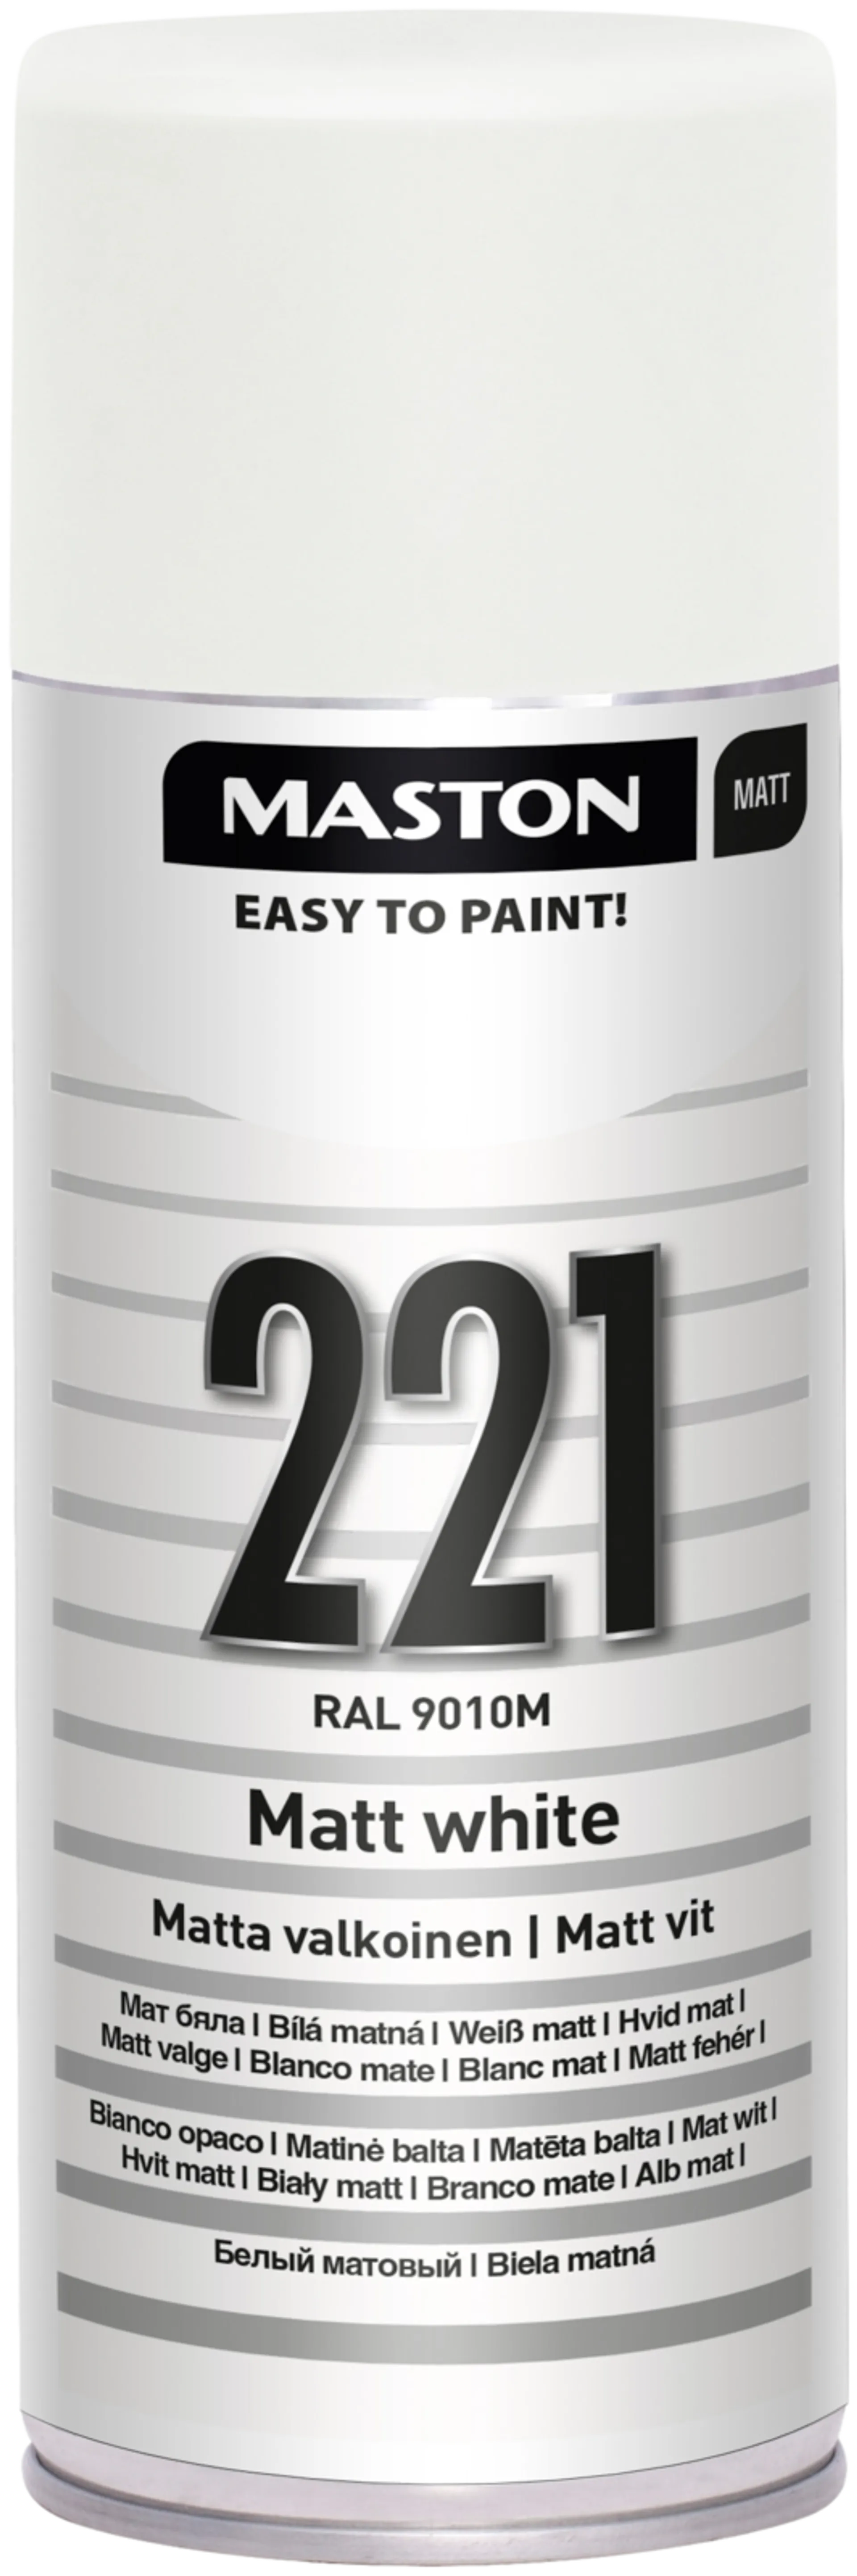 Maston ColorMix spraymaali matta valkoinen 221 400ml RAL 9010